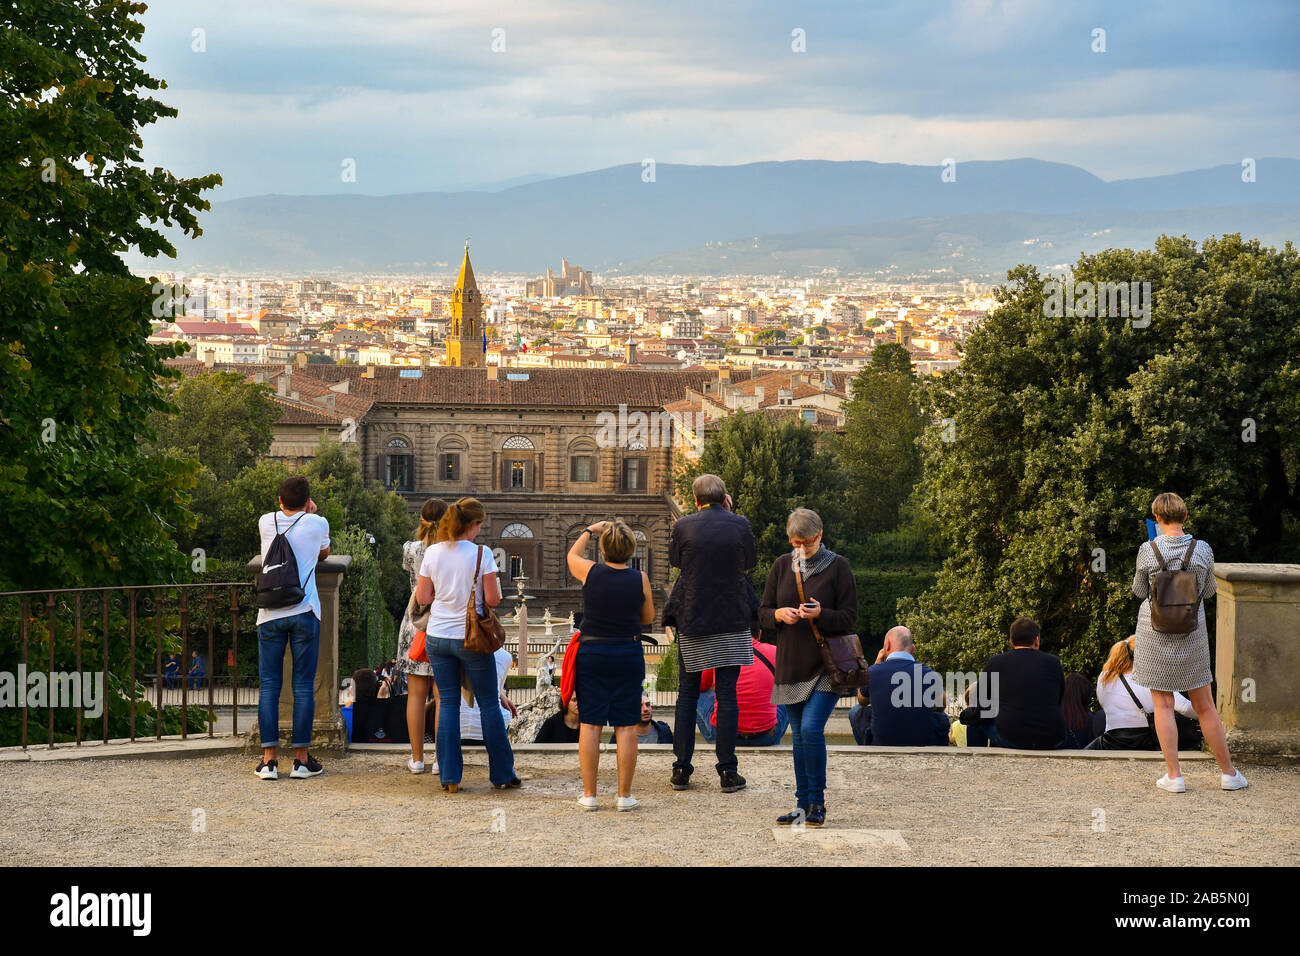 Les touristes de prendre des photos avec des téléphones à partir d'un belvédère dans le jardin de Boboli du Palais Pitti dans le centre historique de Florence, Toscane, Italie Banque D'Images